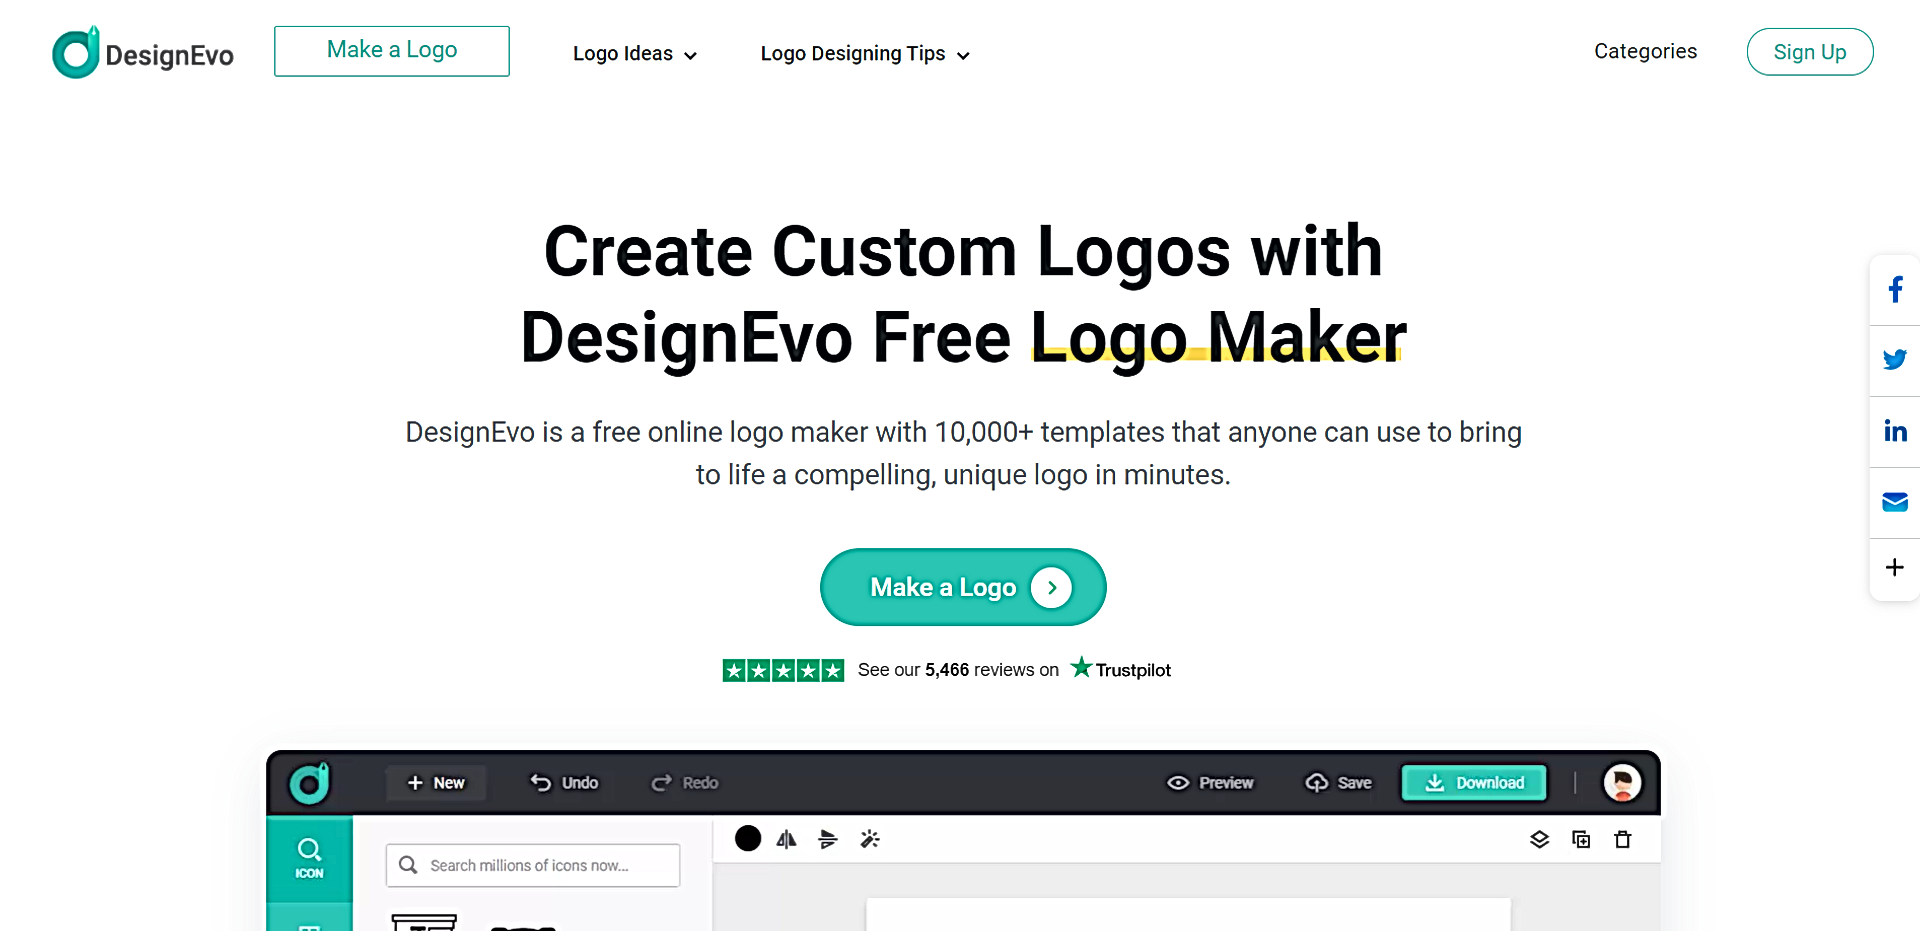 DesignEvo featured